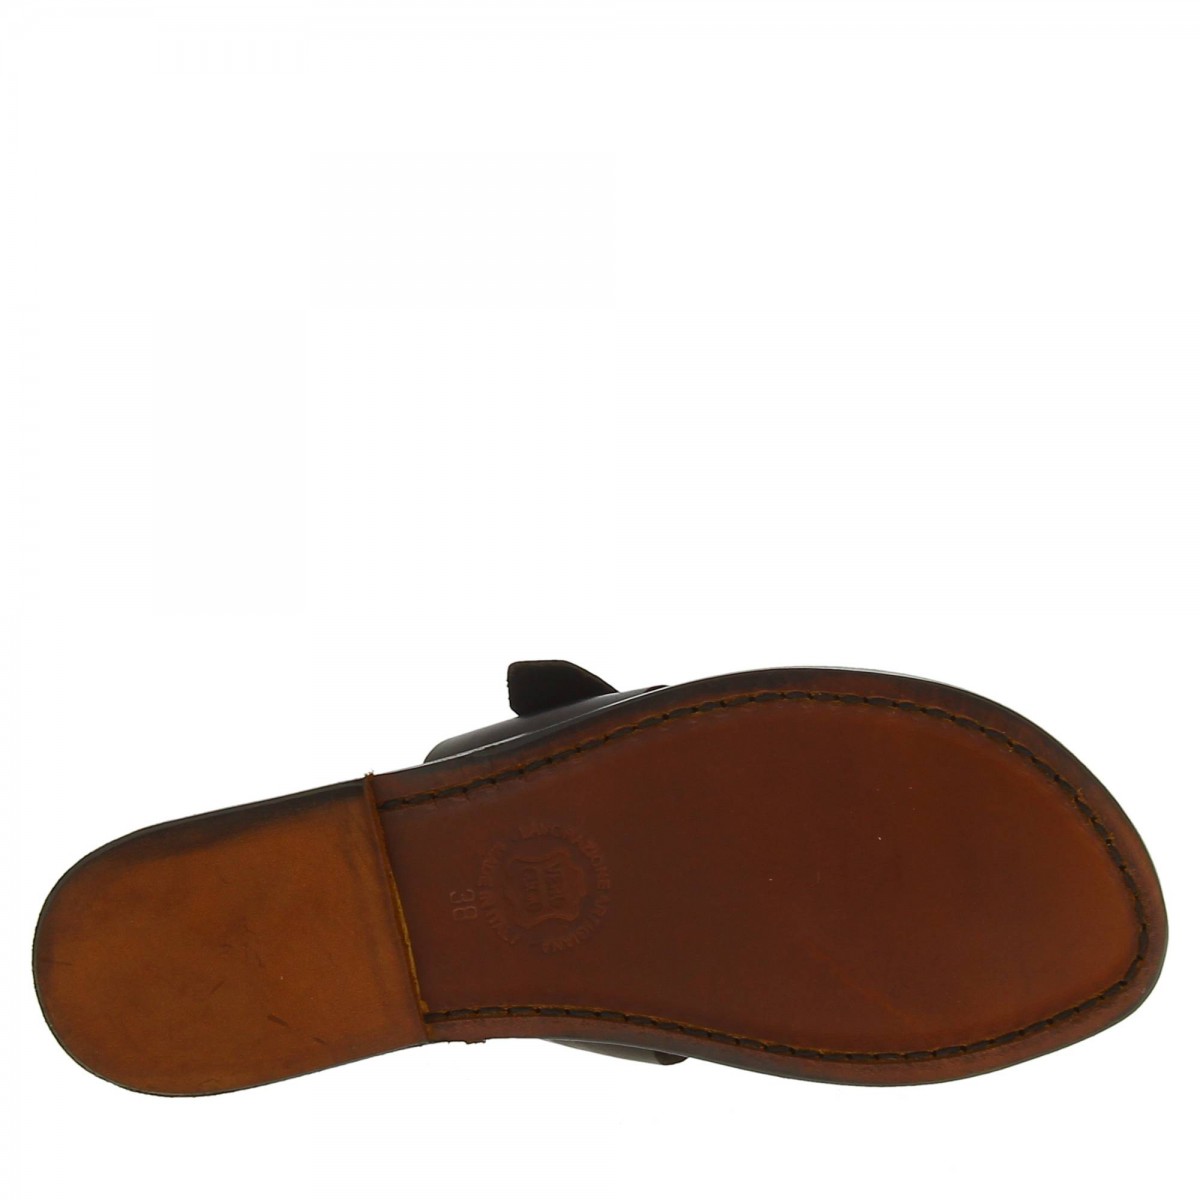 Sandalias de de color marrón para mujeres | Artesanos cuero